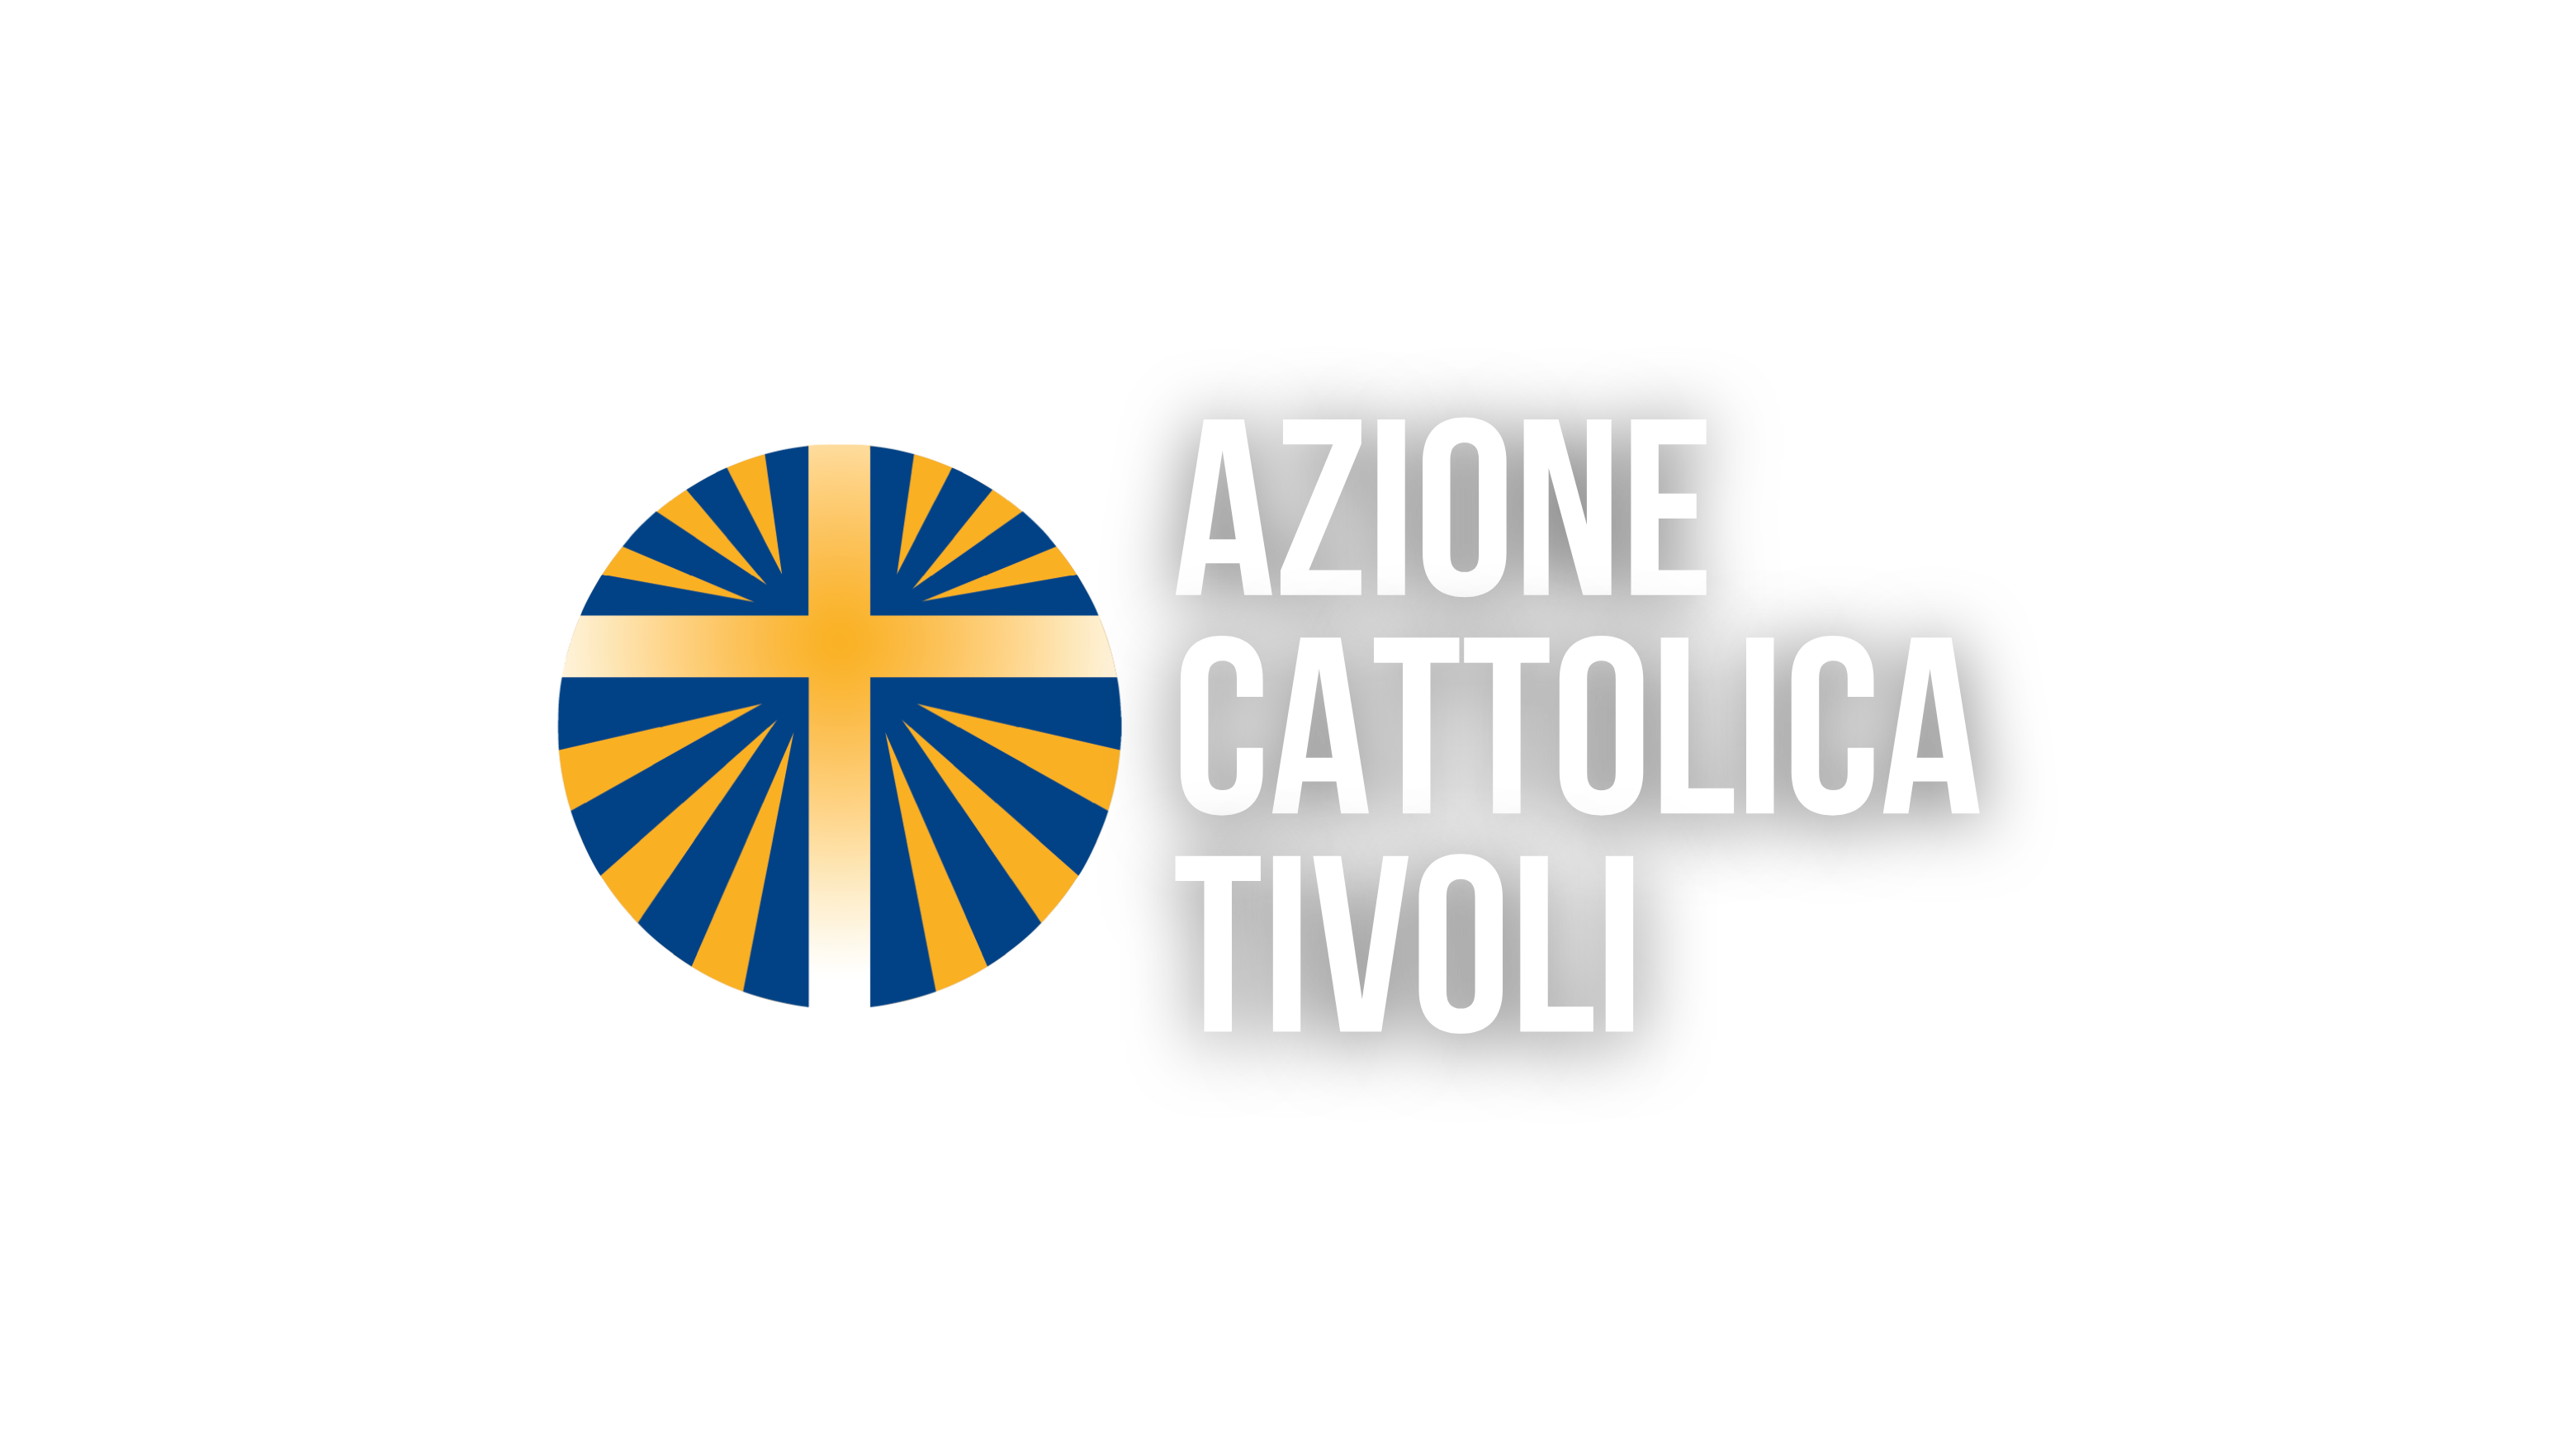 Azione Cattolica Tivoli